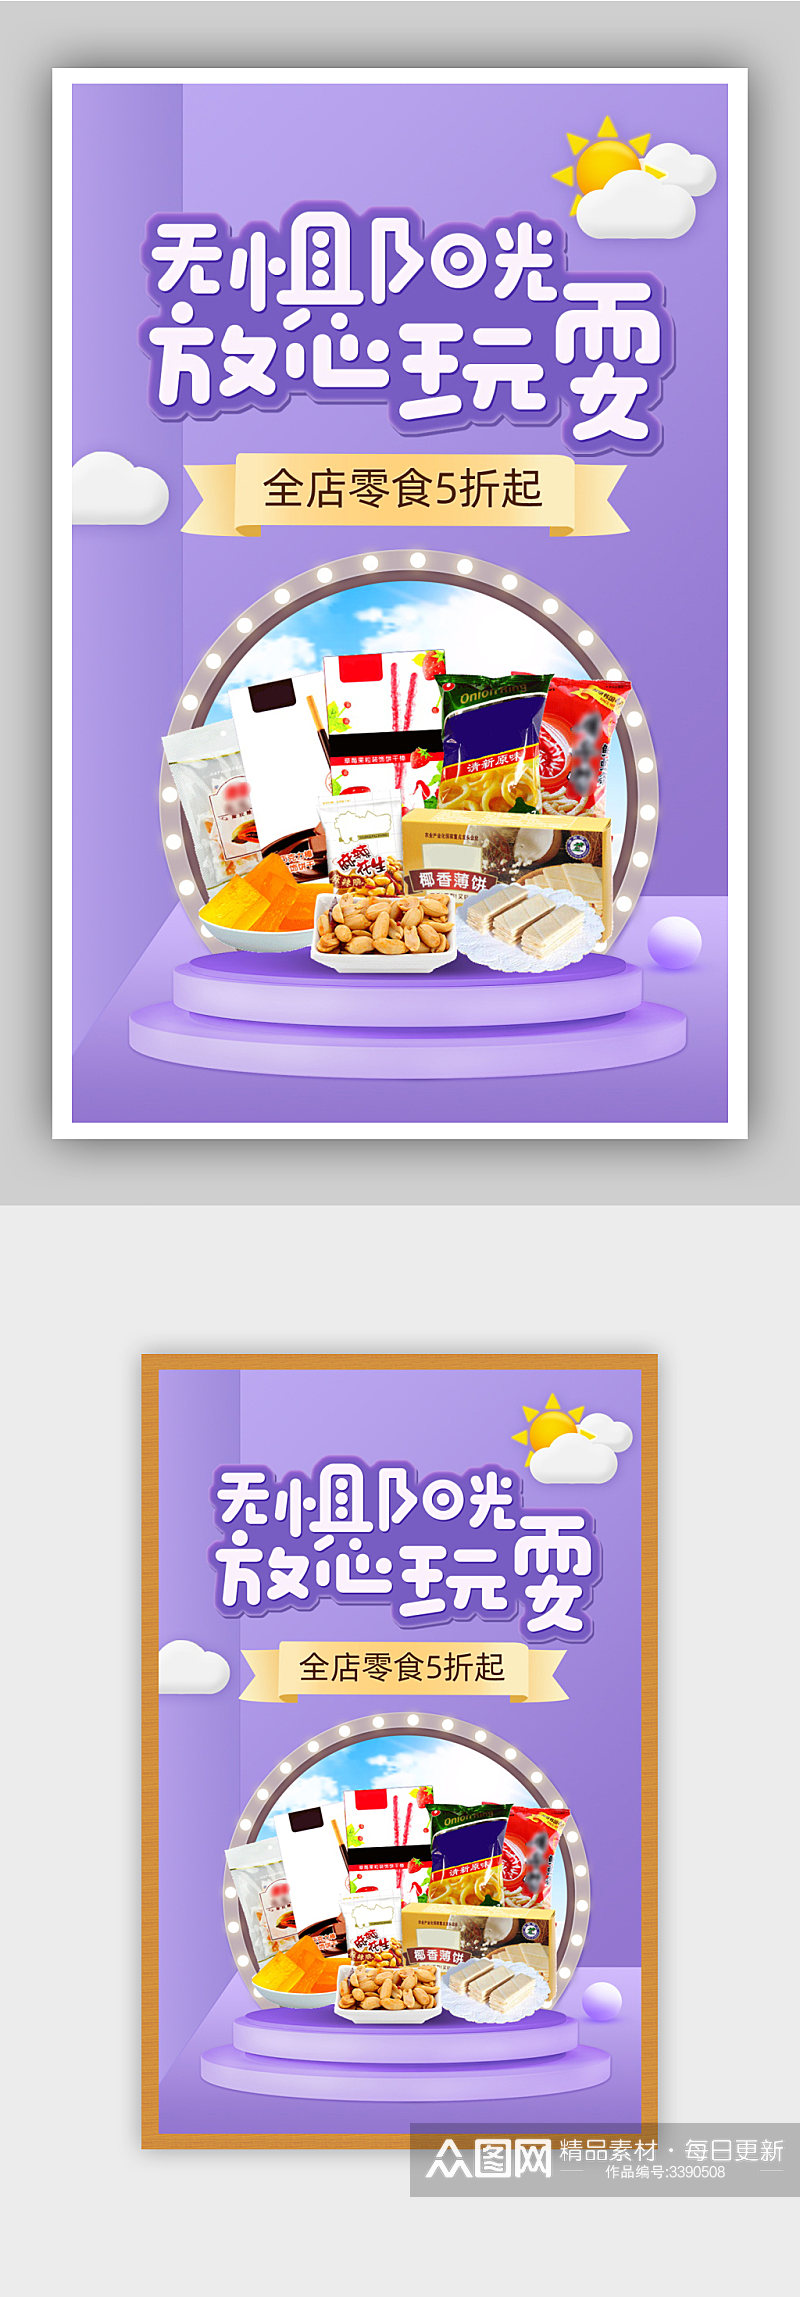 零食节紫色卡通风节日立体食品促销海报素材